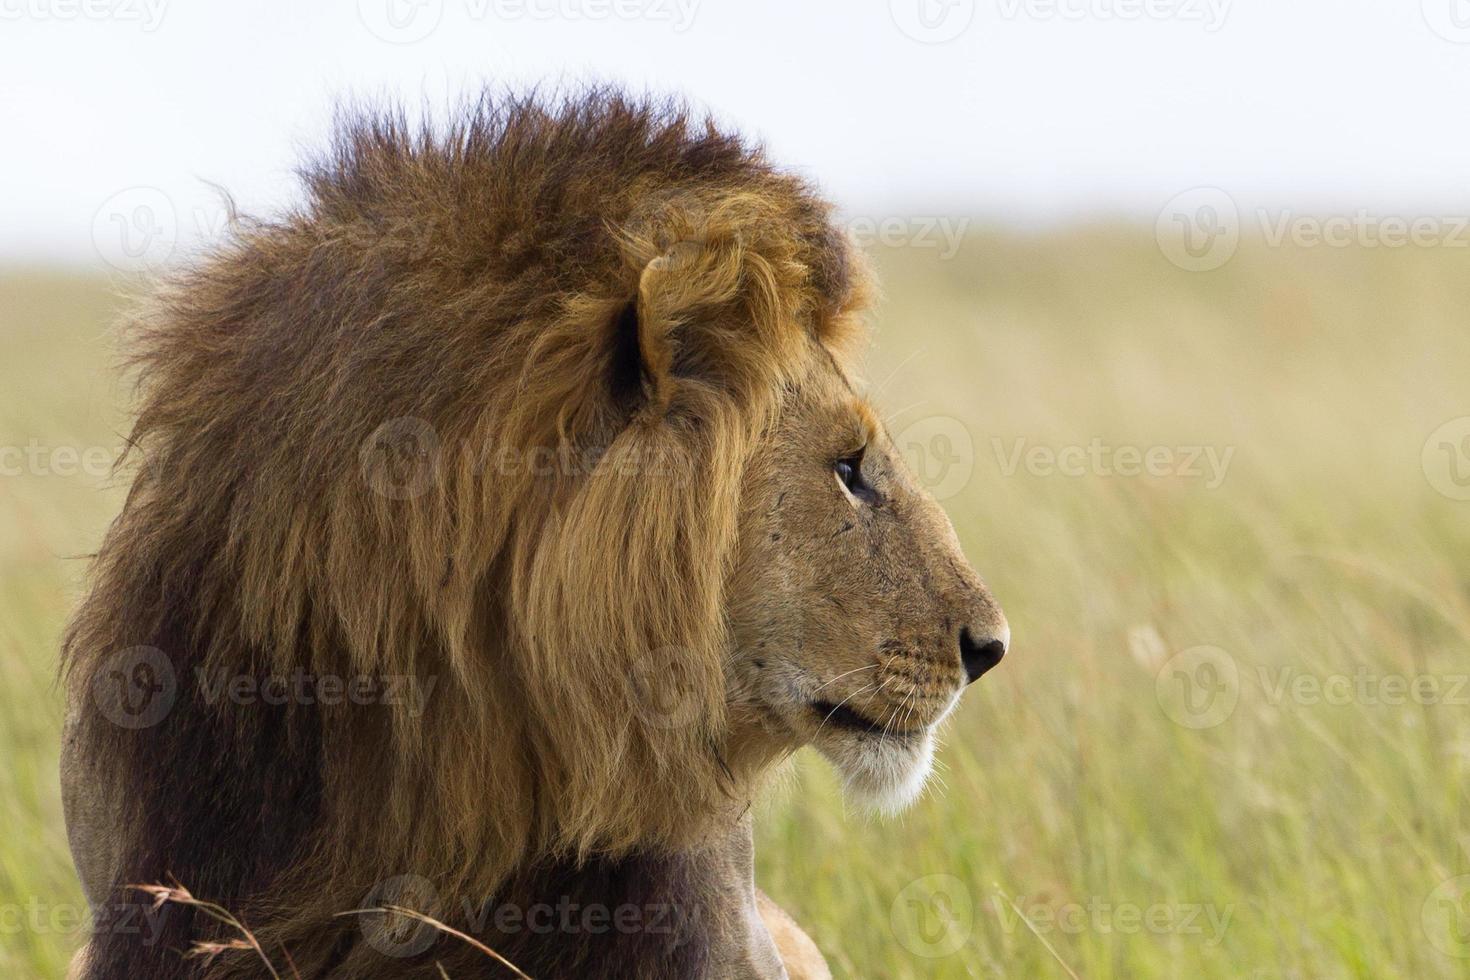 retrato de un león macho foto